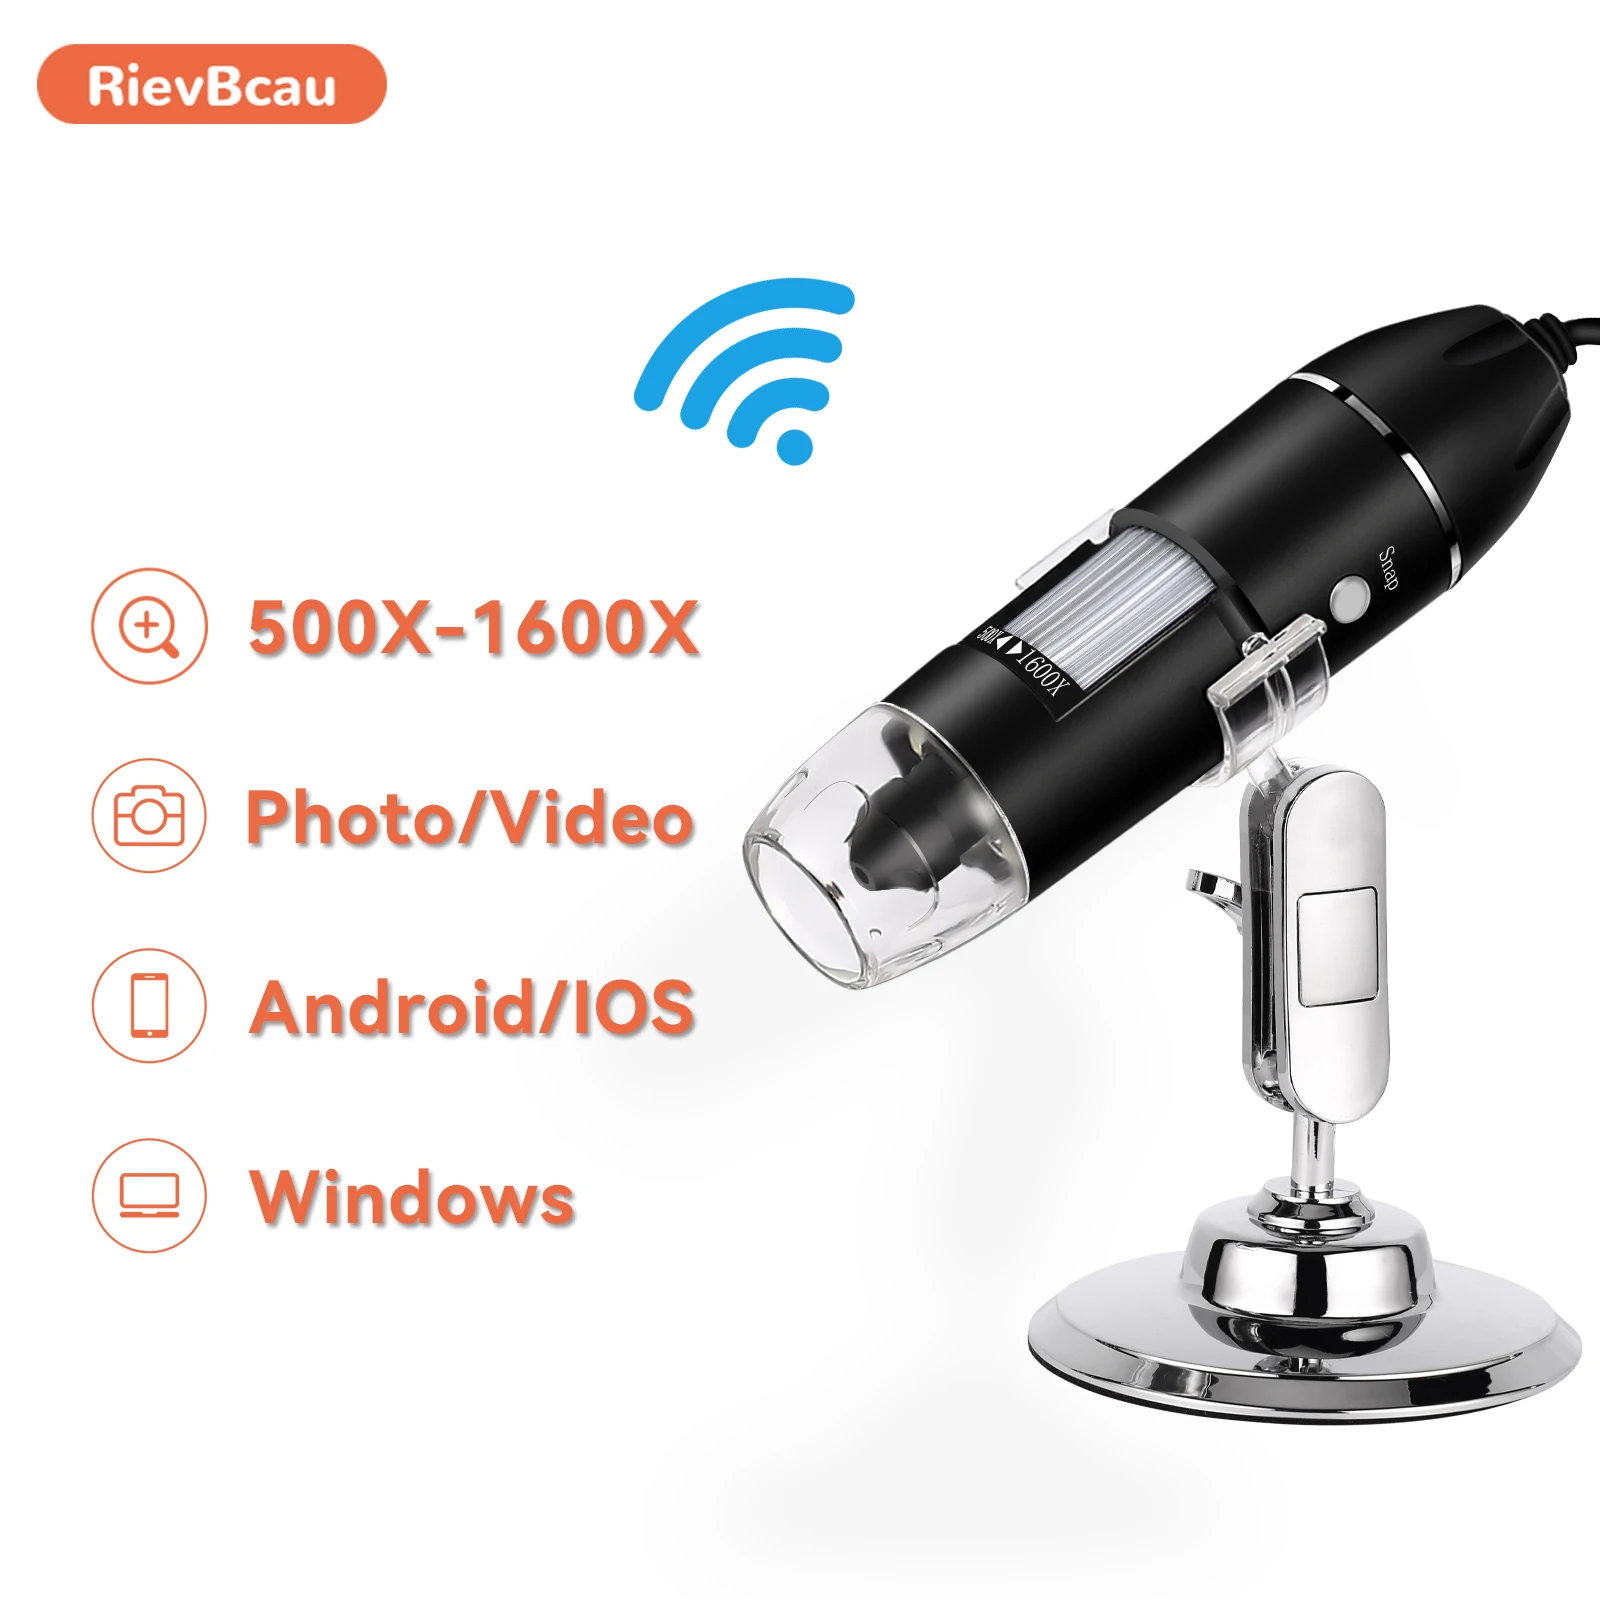 Цифровой микроскоп RIEVBCAU профессиональный с разъемом USB увеличением 500X 1000X 1600X 8